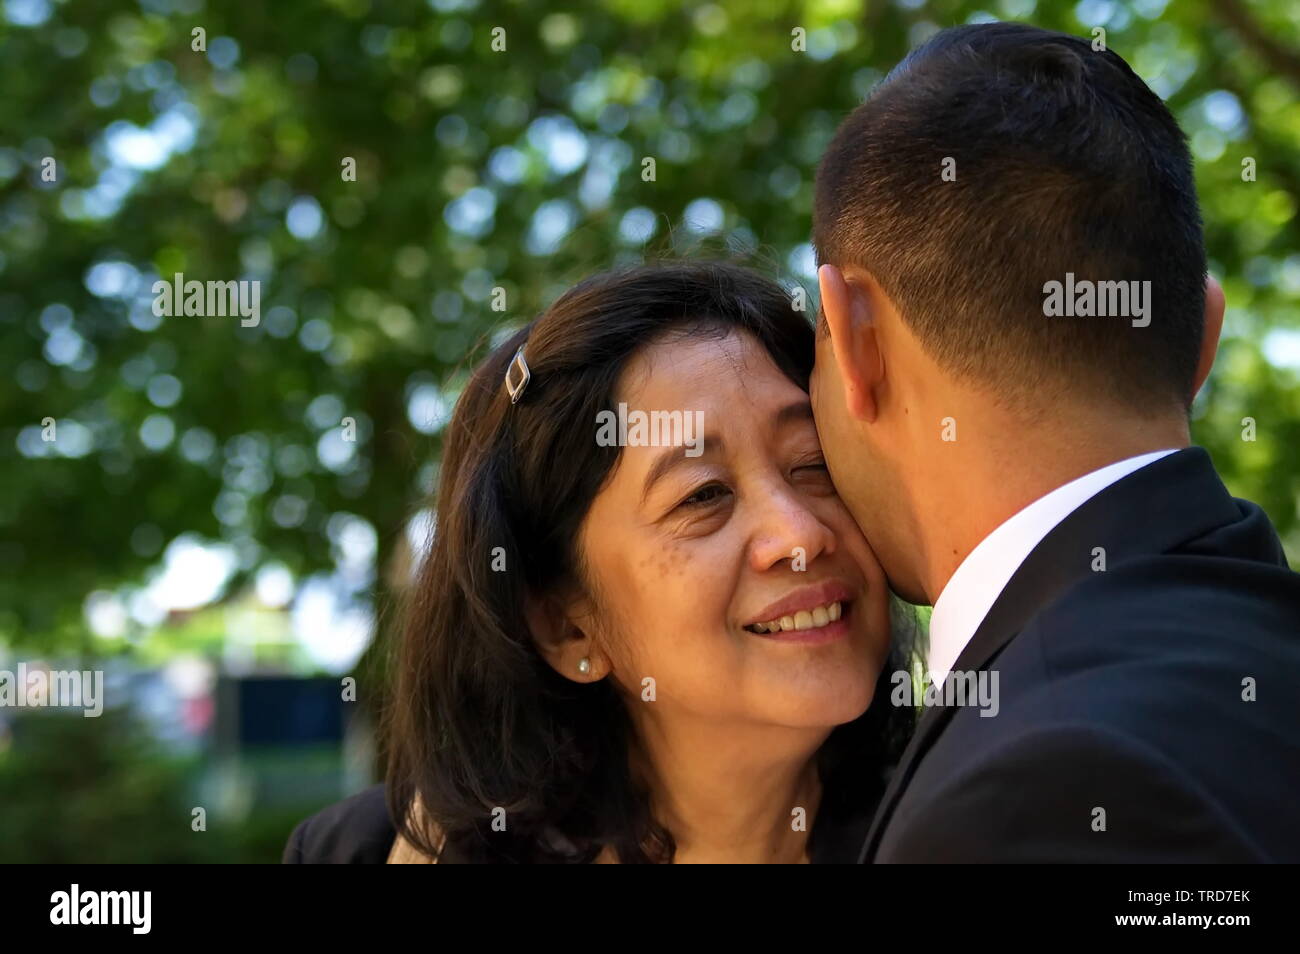 New York City, NY / USA - 24 juin 2016 : Mère et fils embrassant pendant un moment difficile Banque D'Images